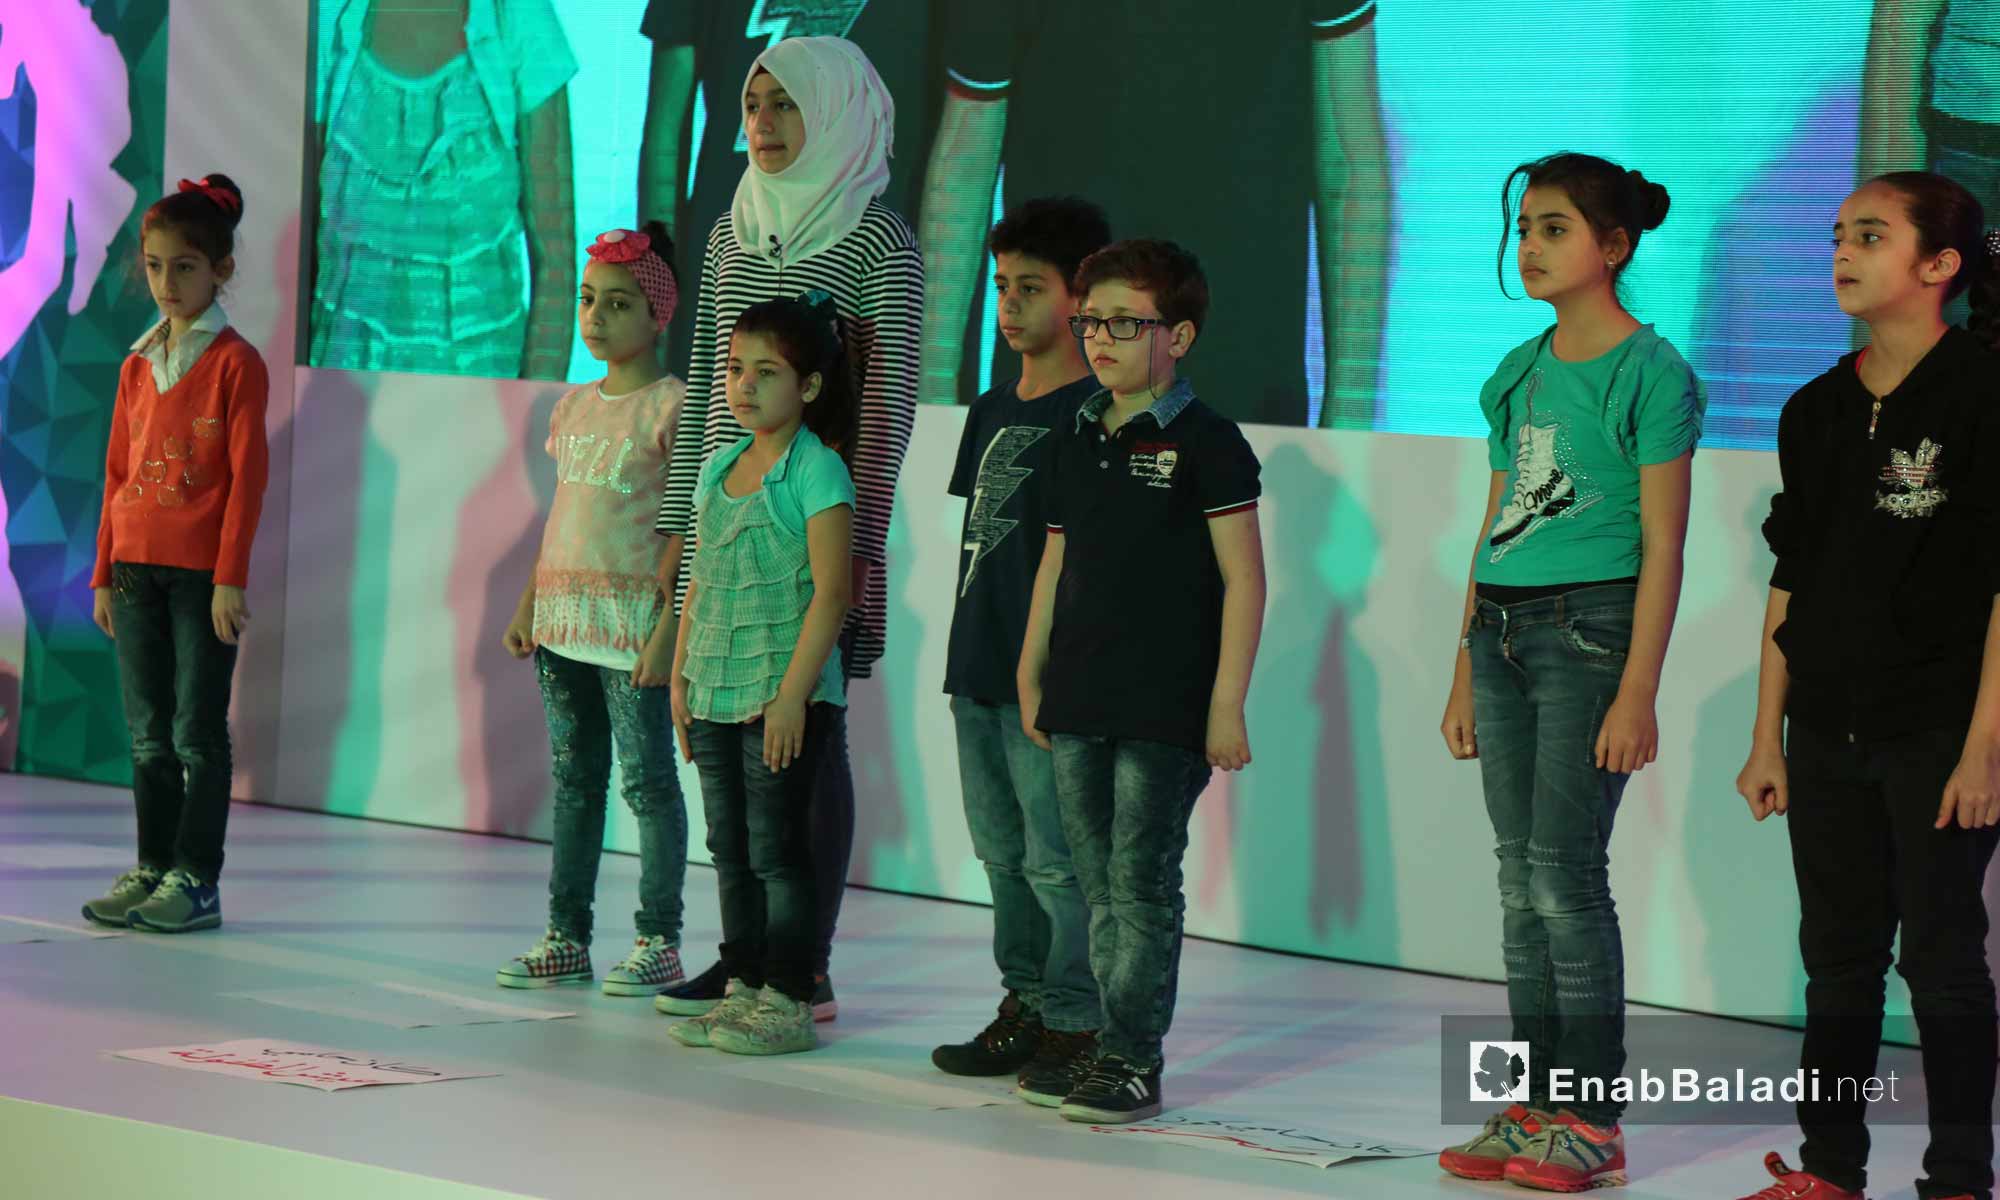 عرض مسرحي لأطفال سوريين في ملتقى "من هنا الطريق"- اسطنبول 22 أيار 2017 (عنب بلدي)